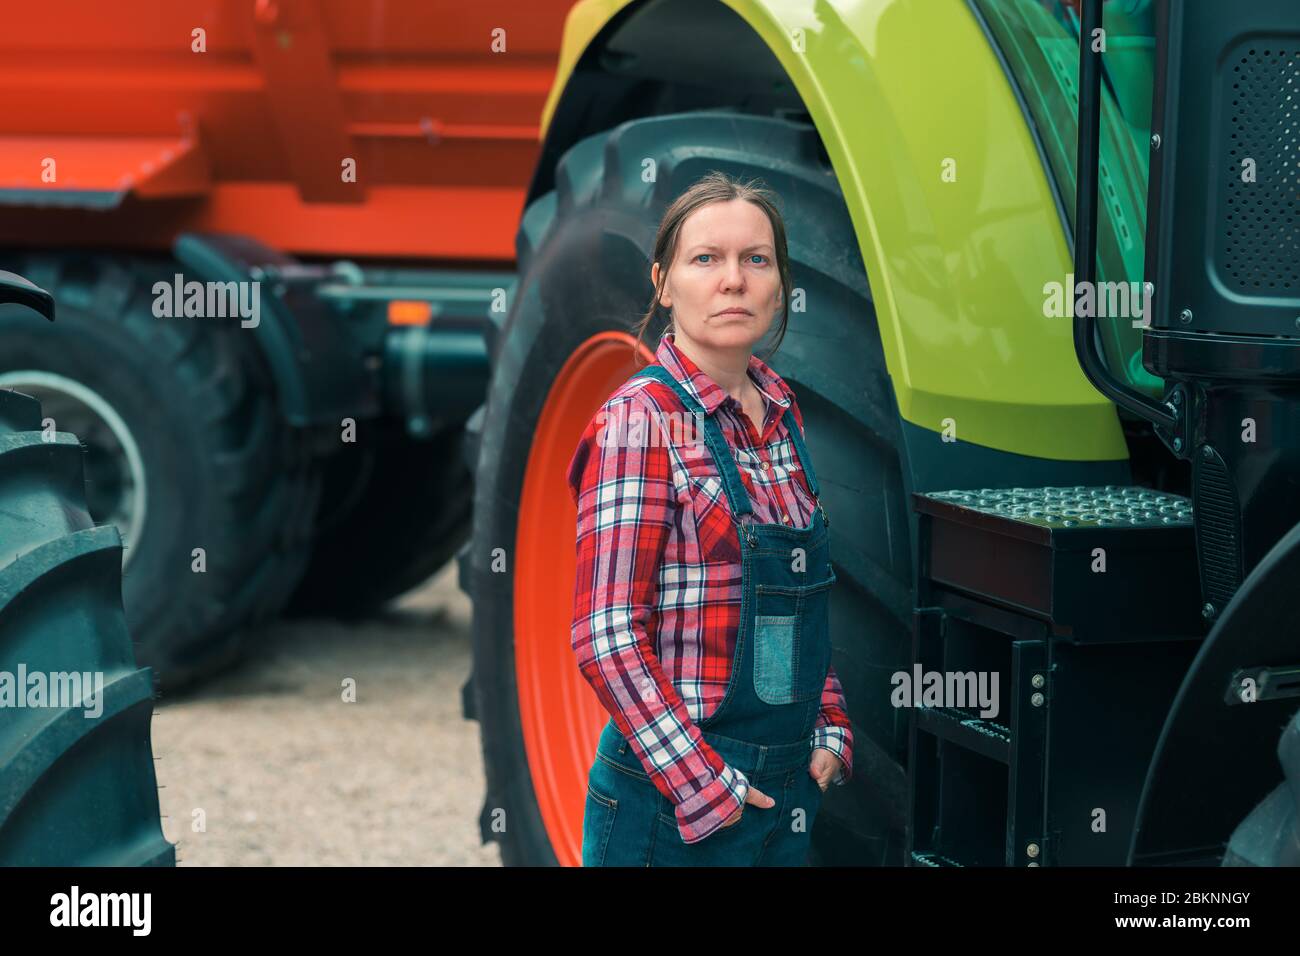 Frau Bauer und Traktor. Frau tun Männer job Konzept. Weibliche Landarbeiter vor der landwirtschaftlichen Maschinen posieren. Stockfoto